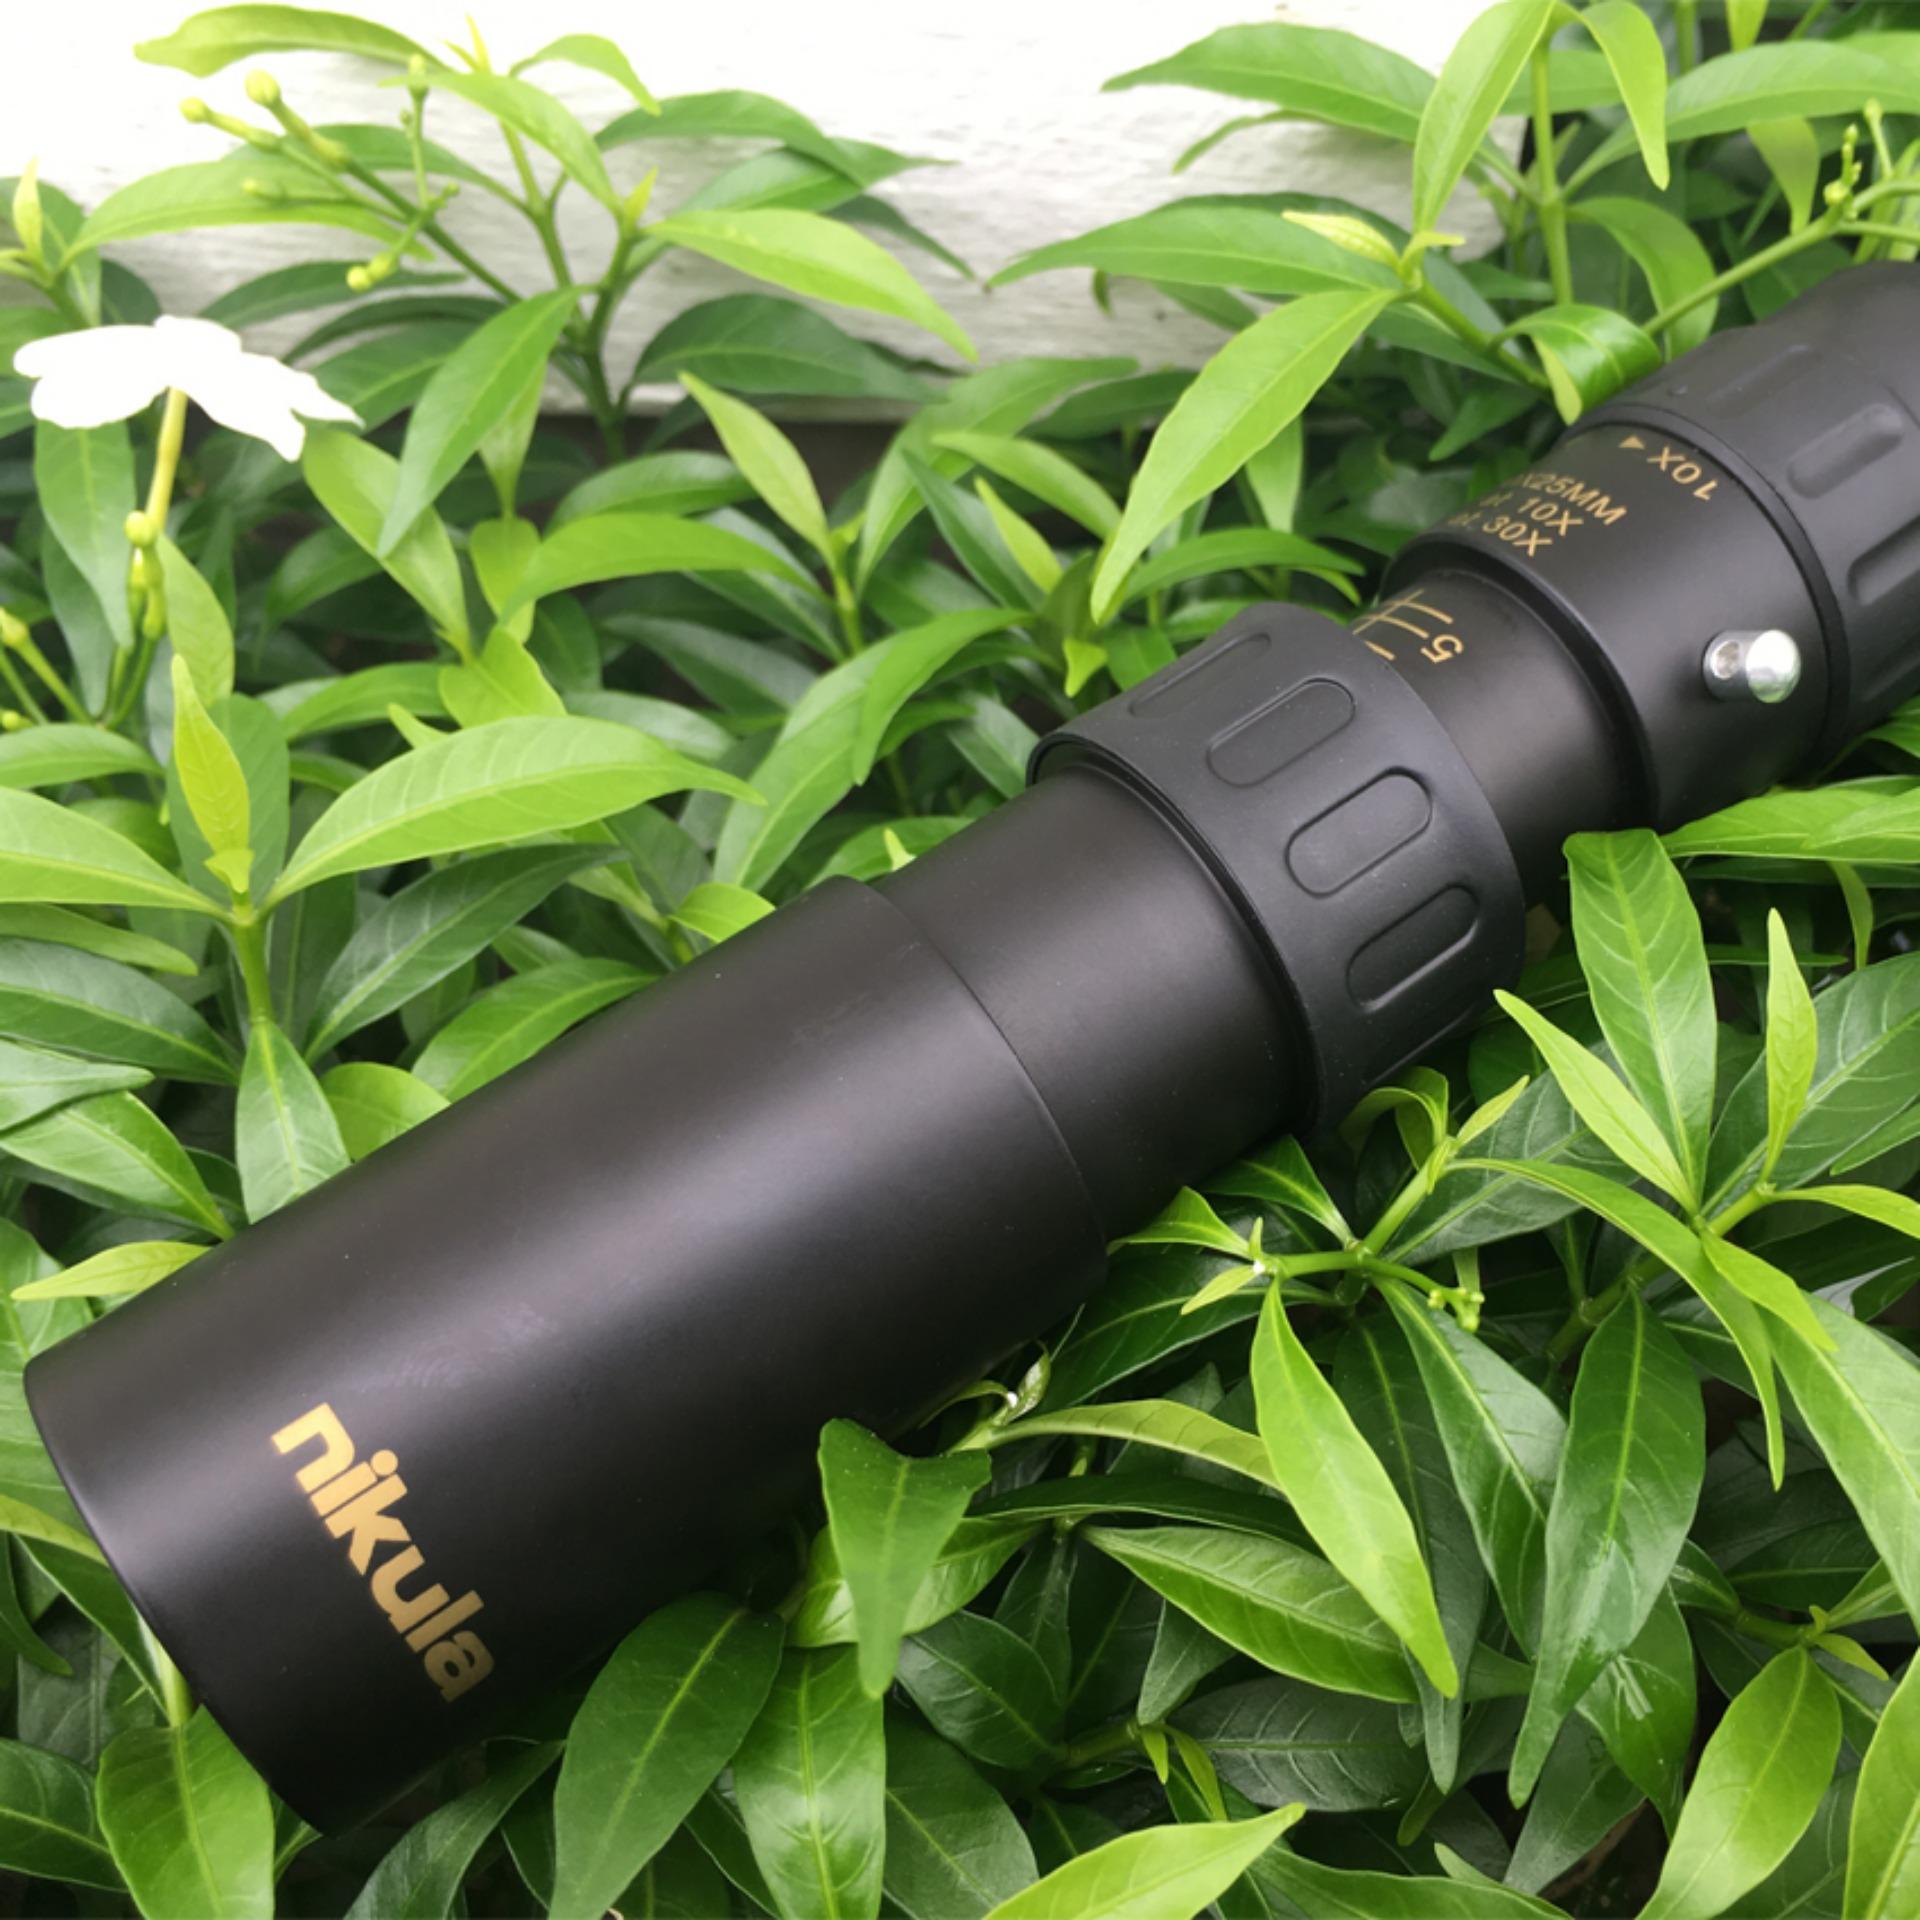 กล้องส่องทางไกล ตาเดียว Nikula ยืดหด 10-30x25 Binocular กล้องส่องสัตว์ ส่องนก เดินป่า กล้องส่องระยะไกล